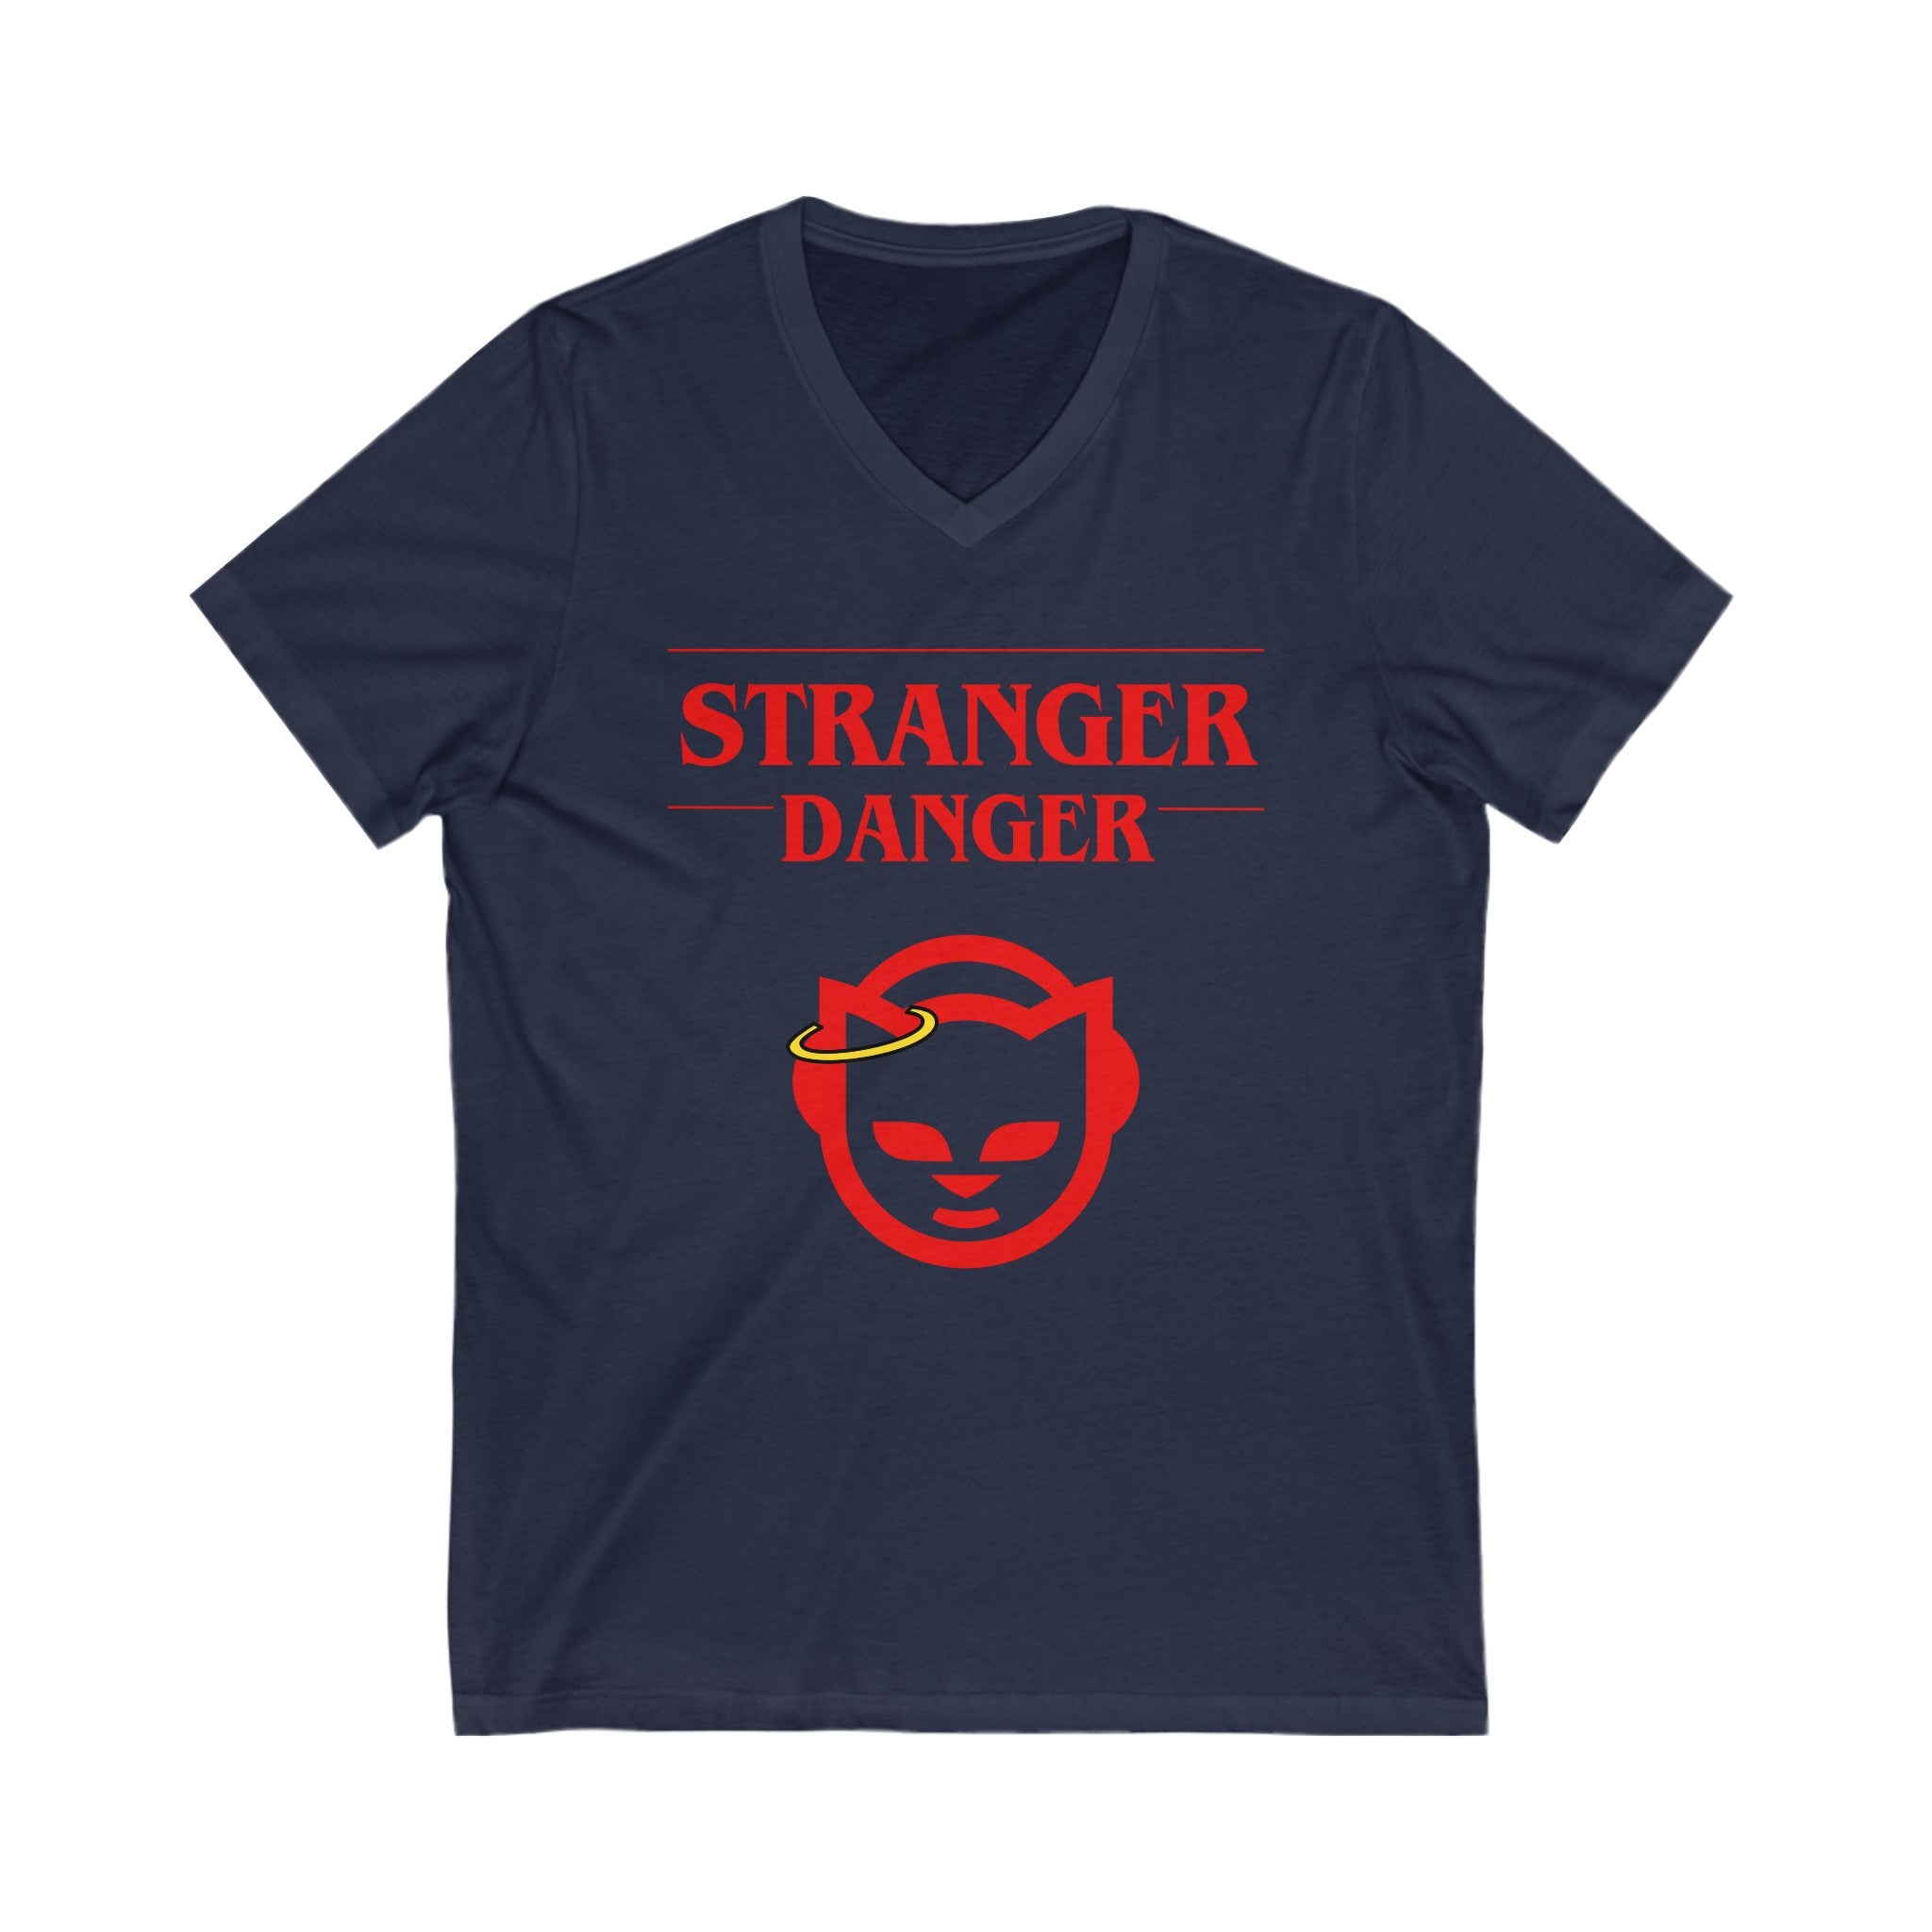 FURDreams “Stranger” III Short Sleeve V-Neck